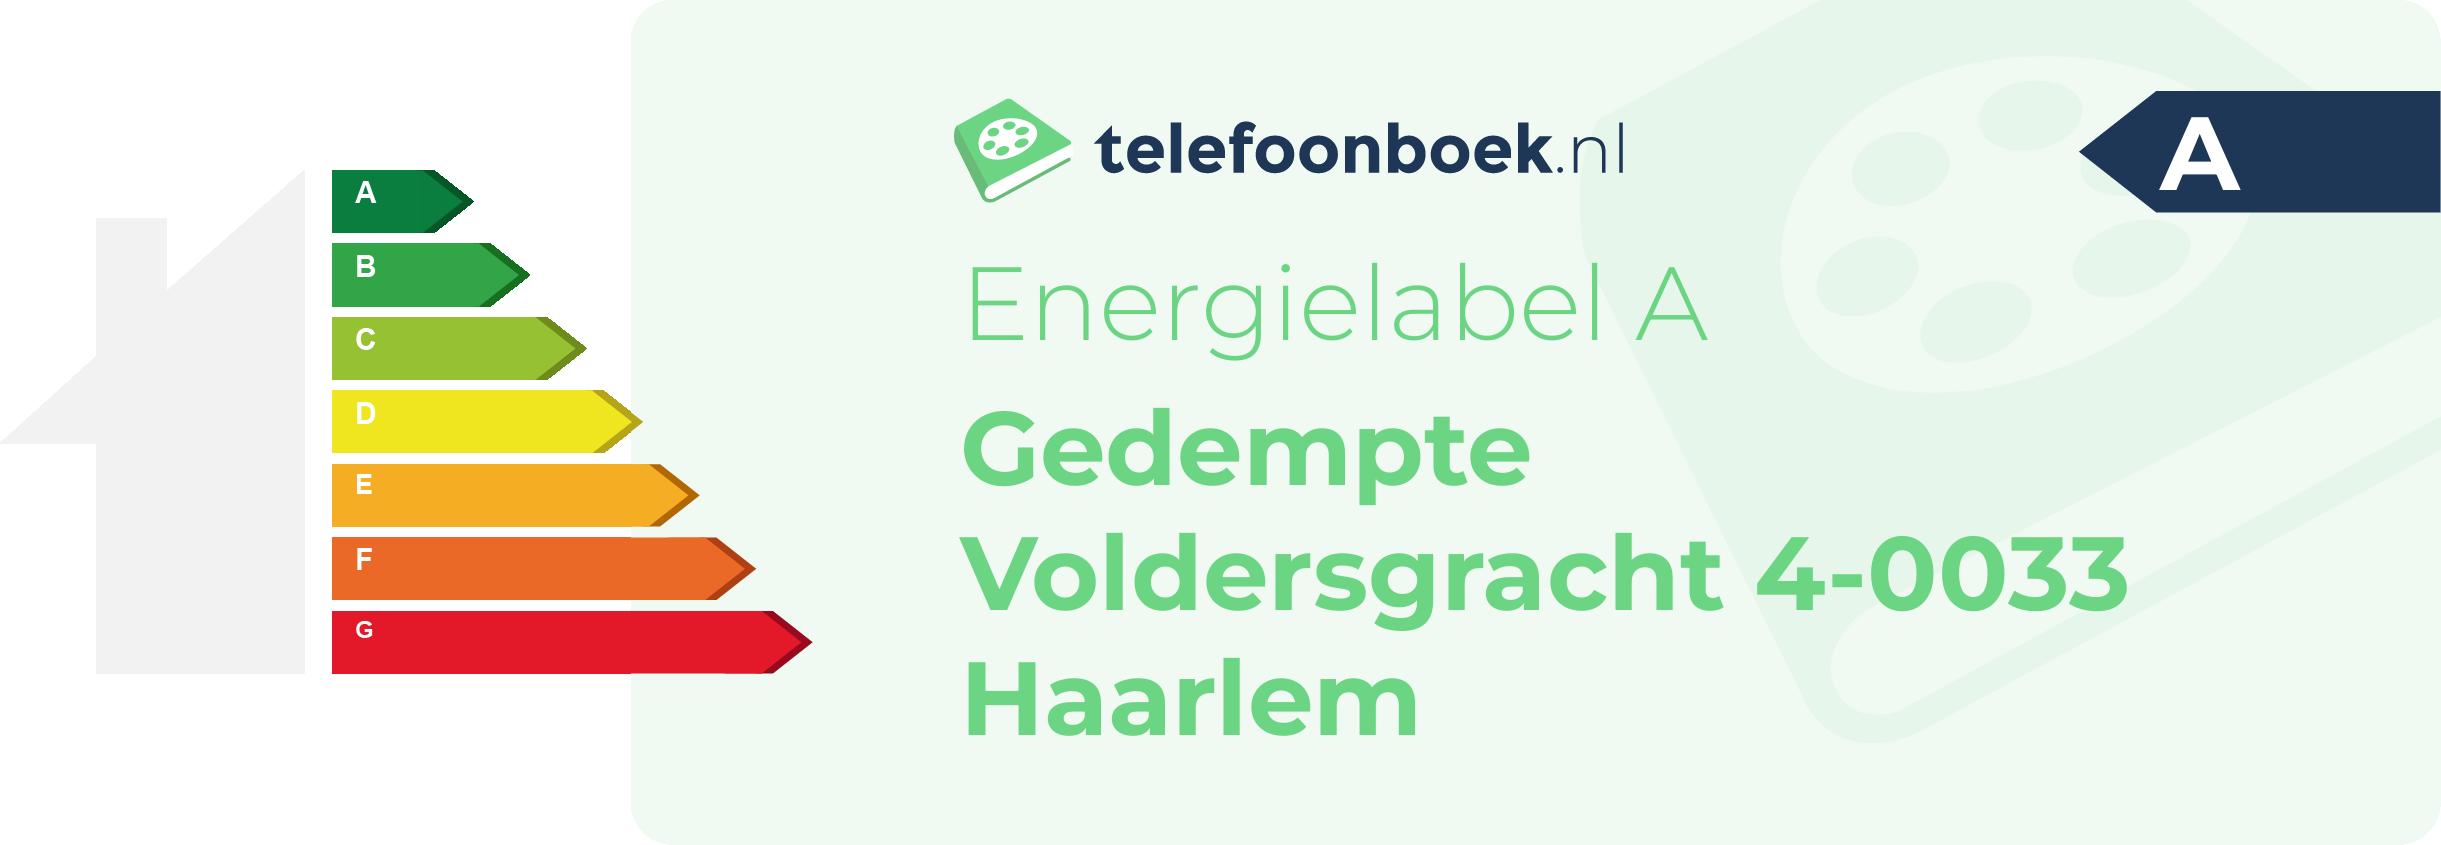 Energielabel Gedempte Voldersgracht 4-0033 Haarlem